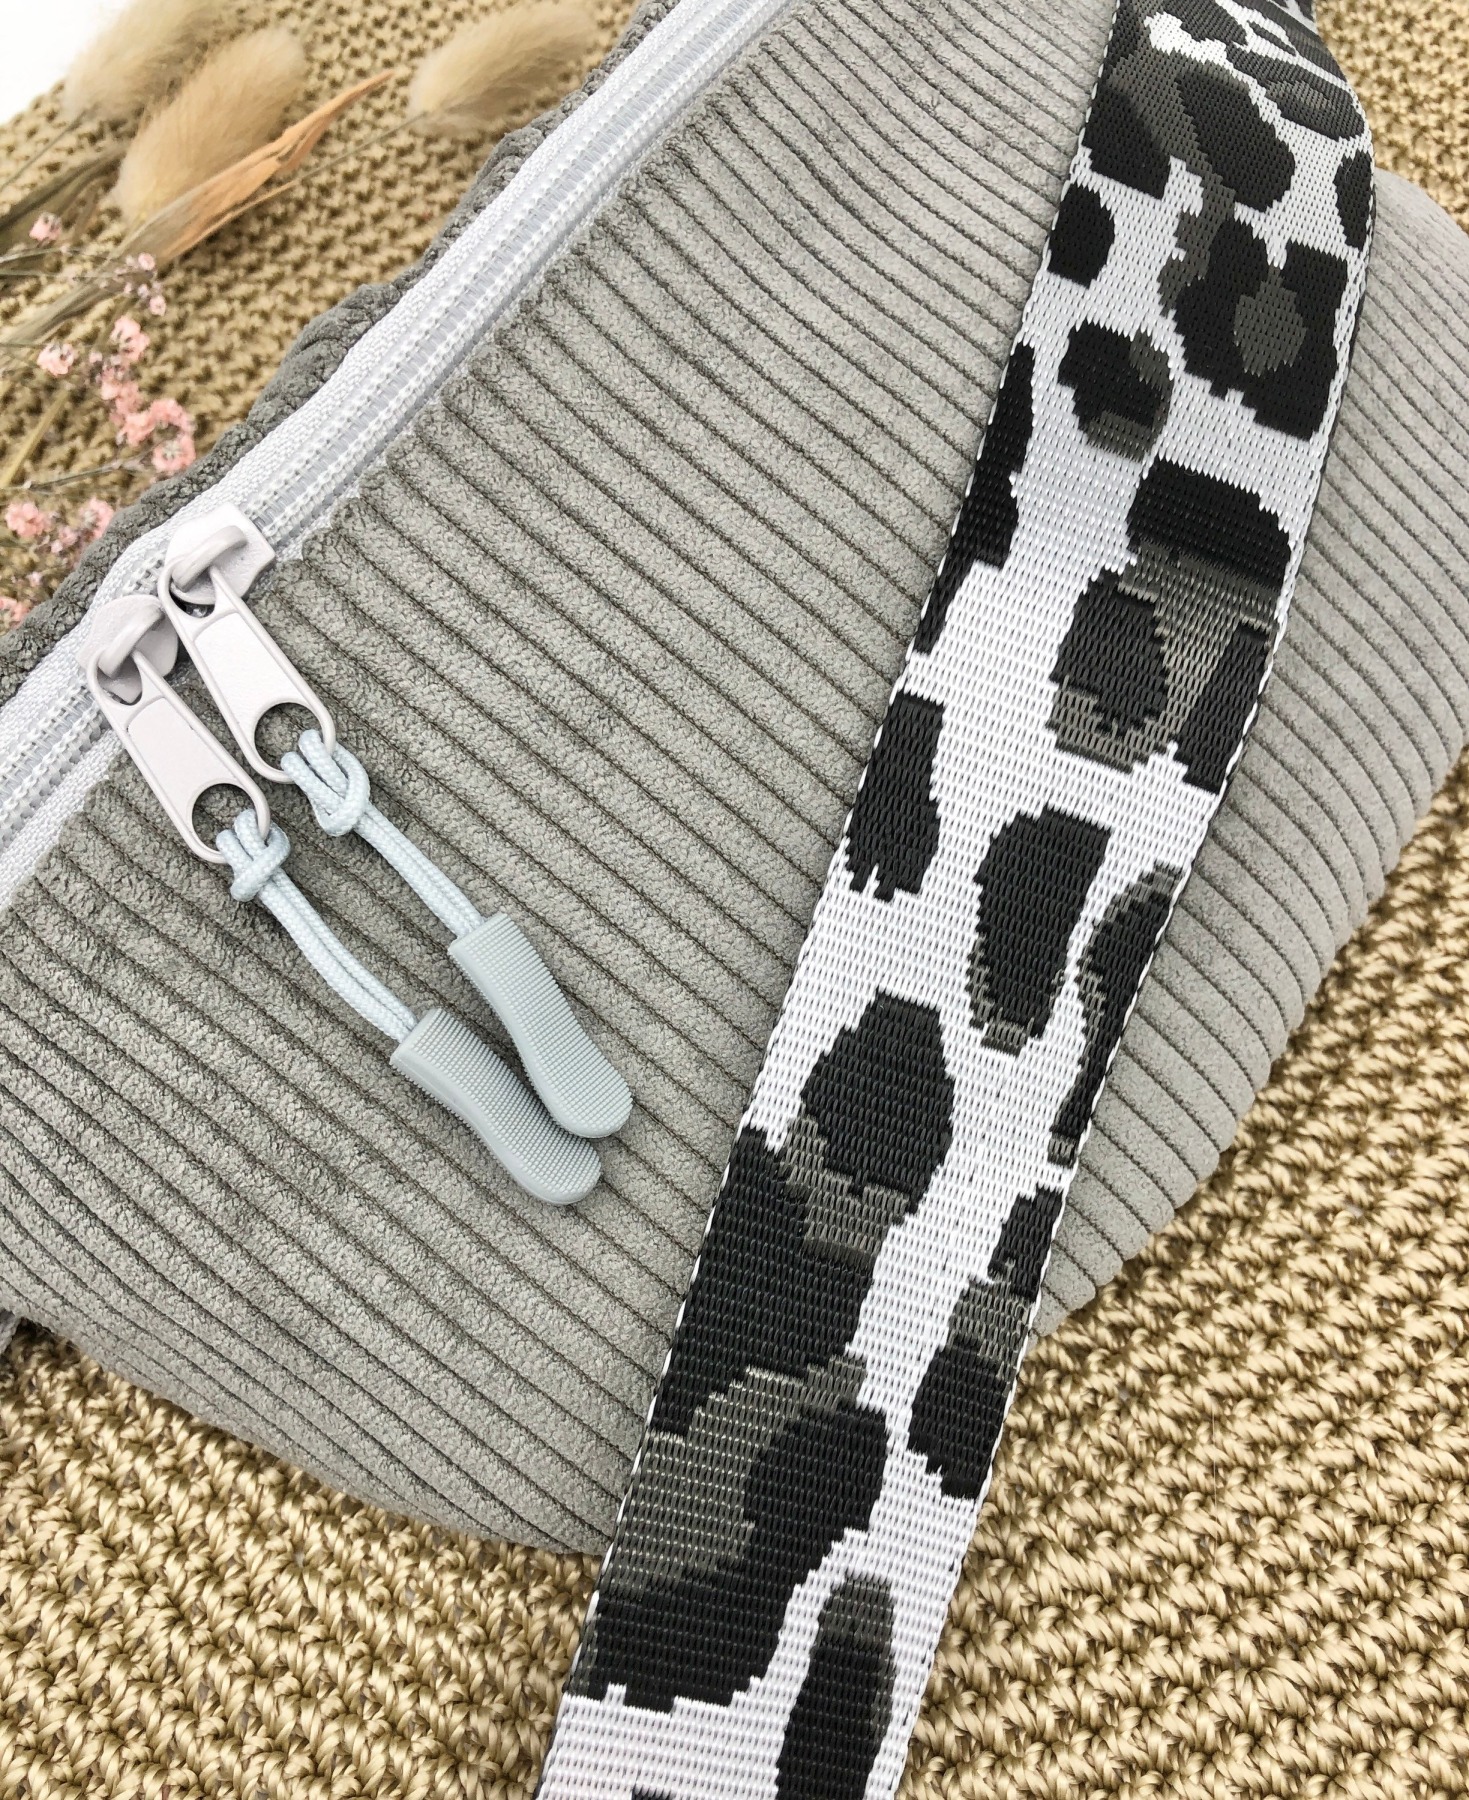 Bauchtasche, Crossbag Cord graubeige mit Leogurt in schwarz weiß/Silber, Tasche Cord grau beige,